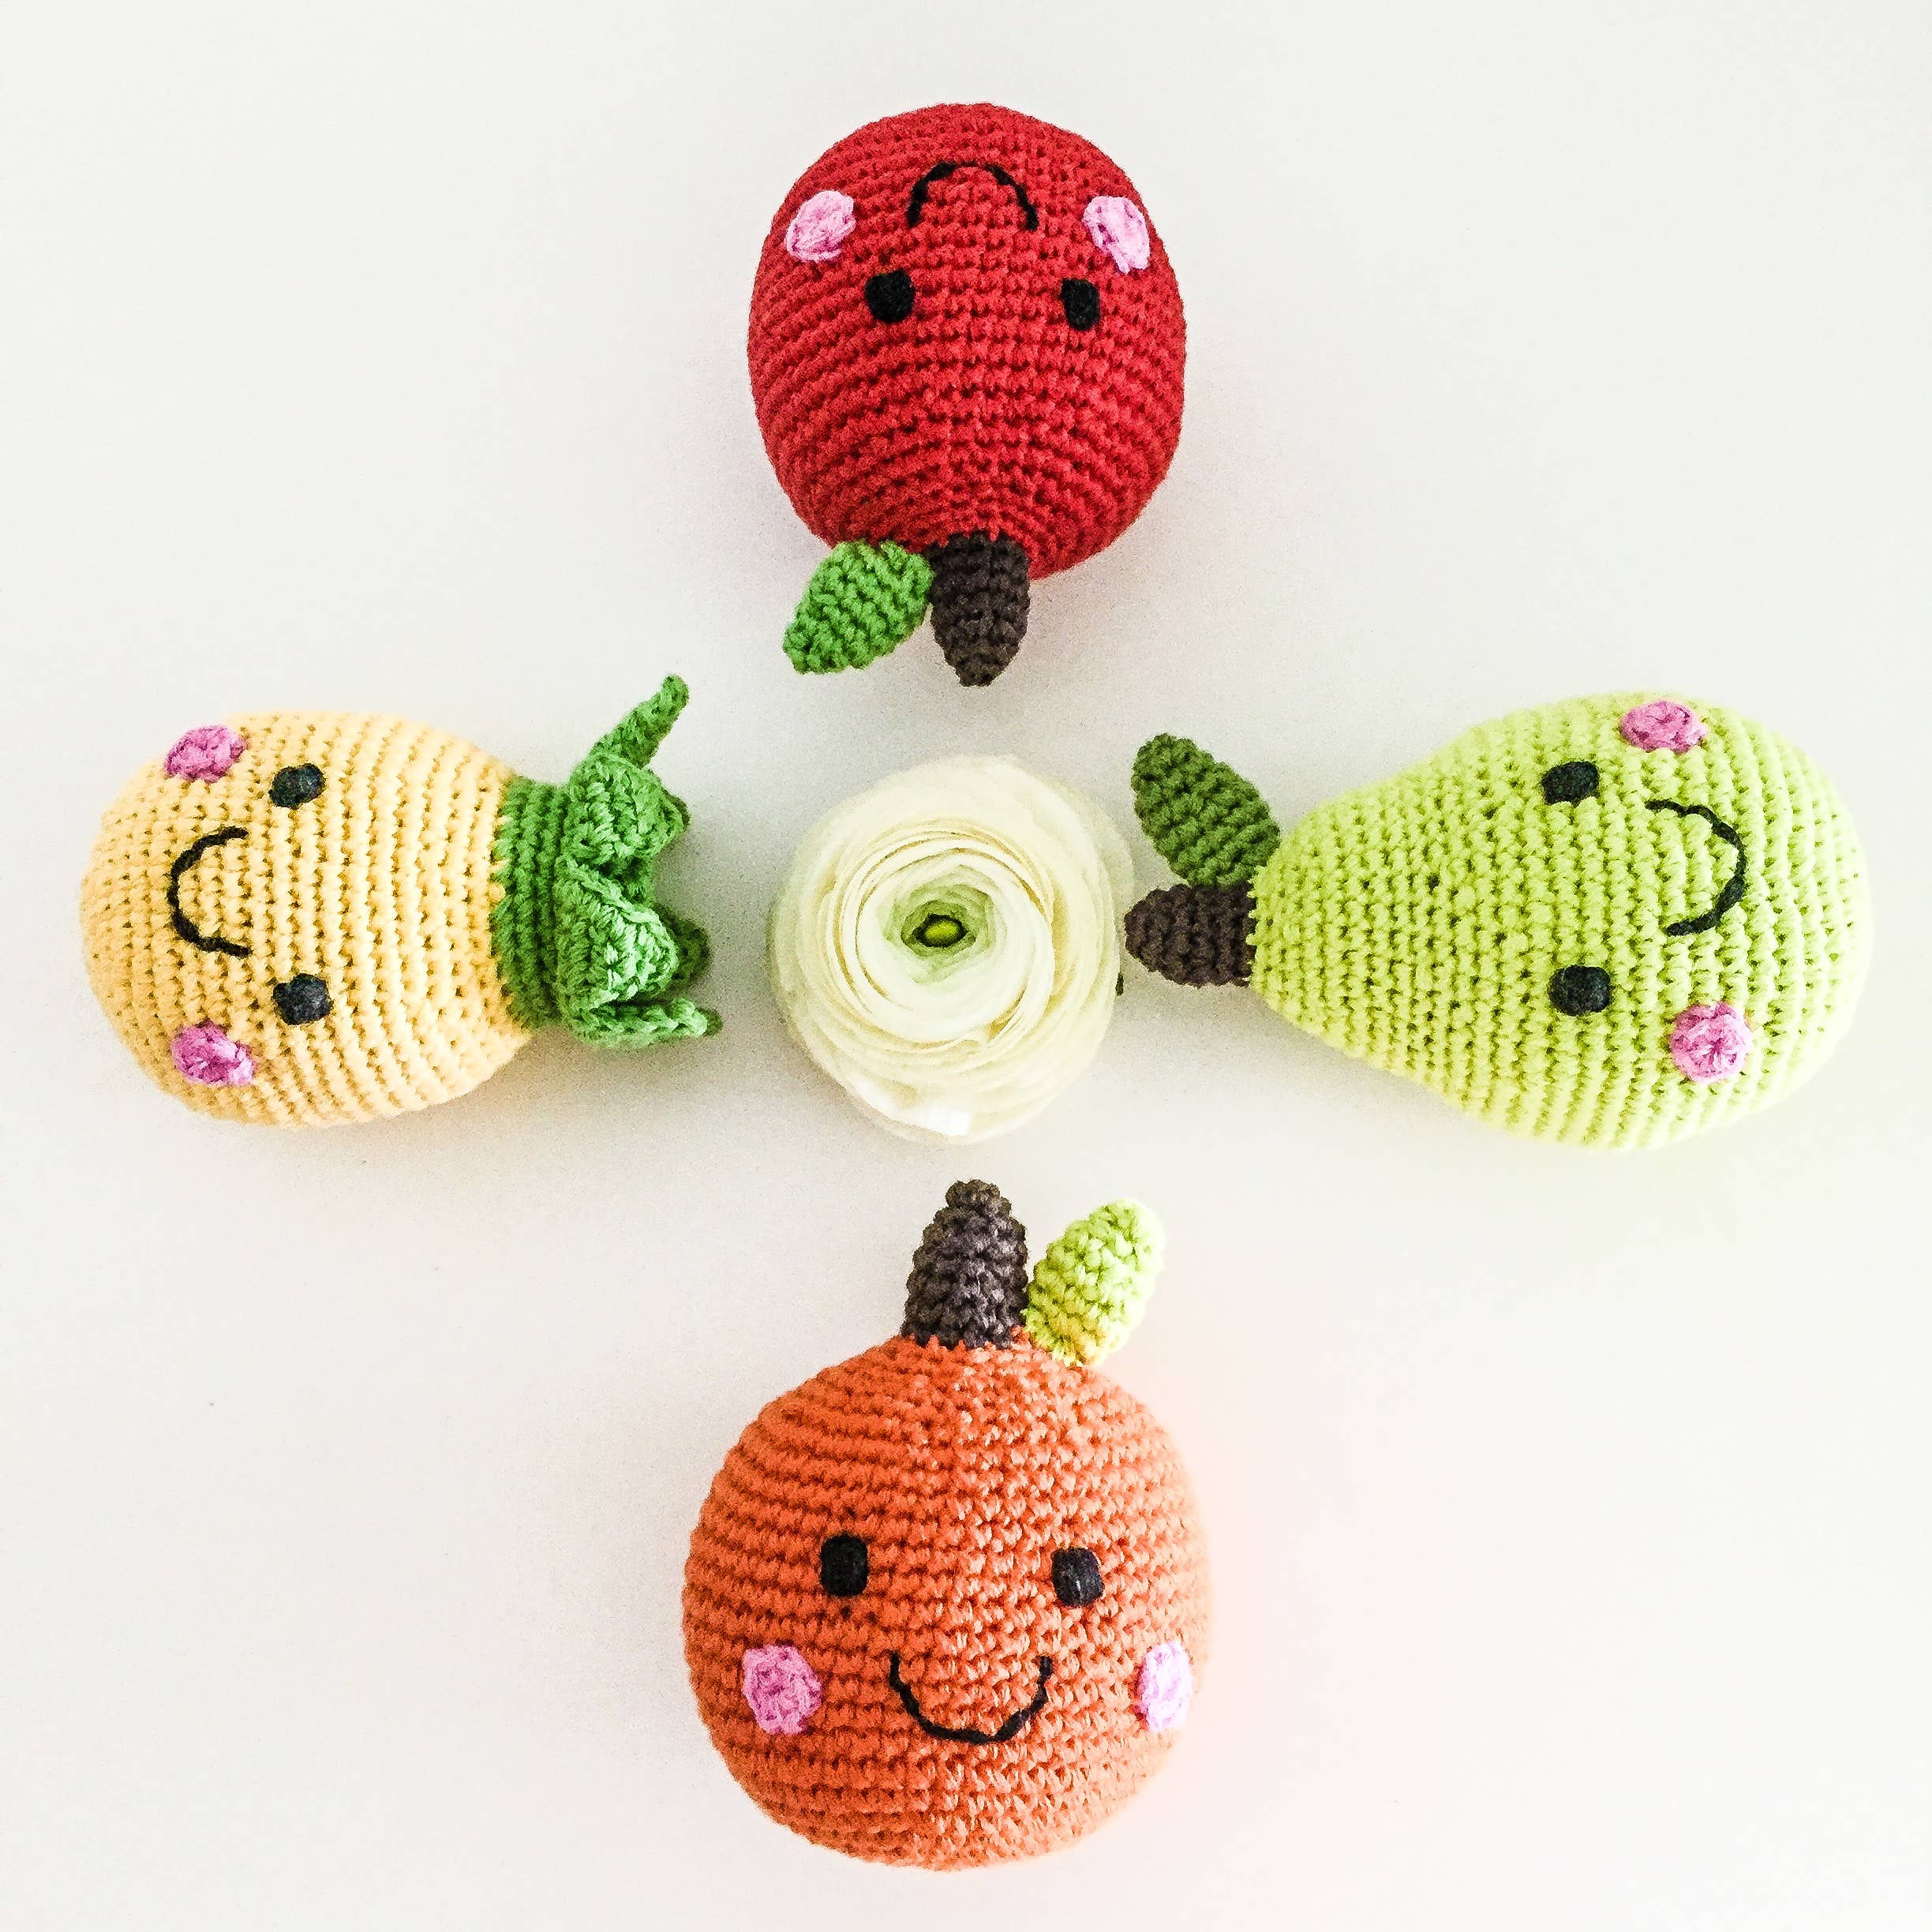 Friendly Crocheted Apple Rattle